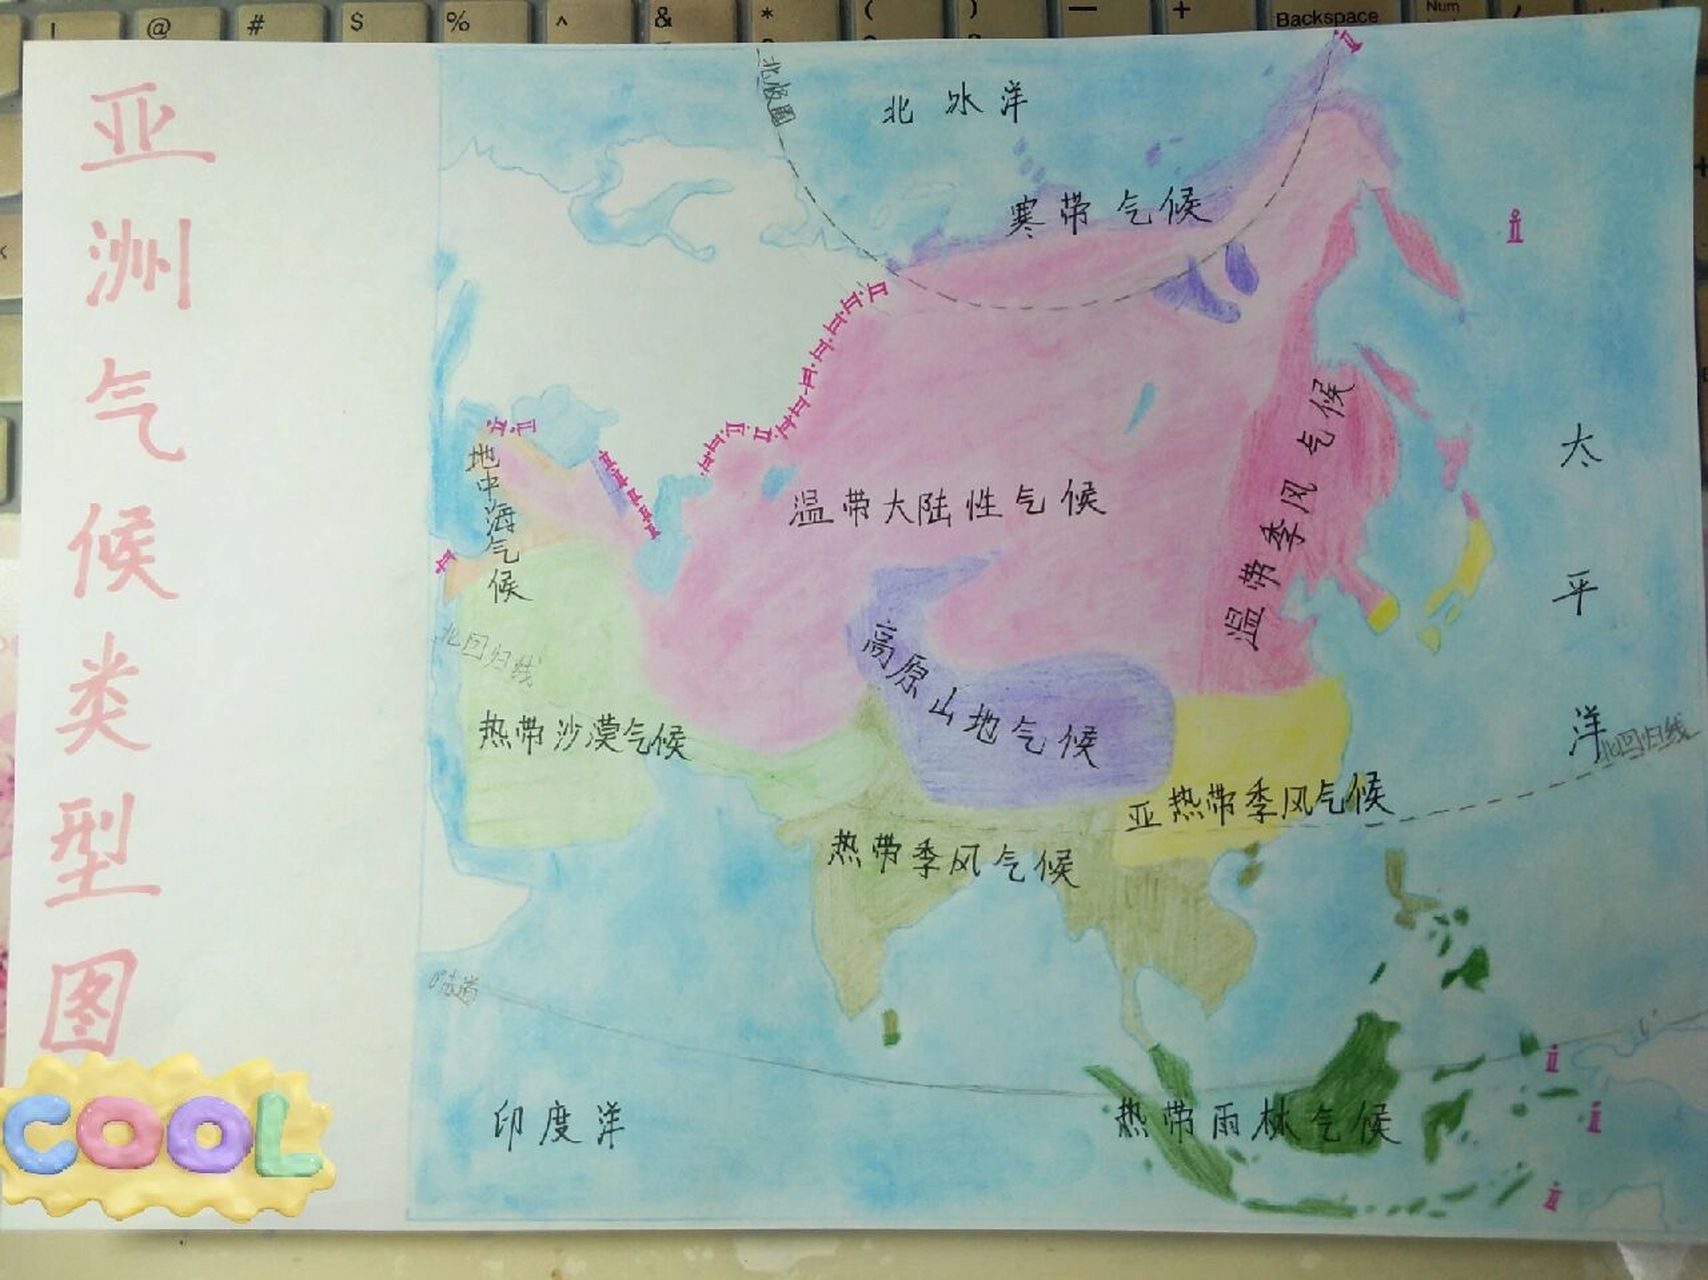 亚洲气候类型图 手绘图片